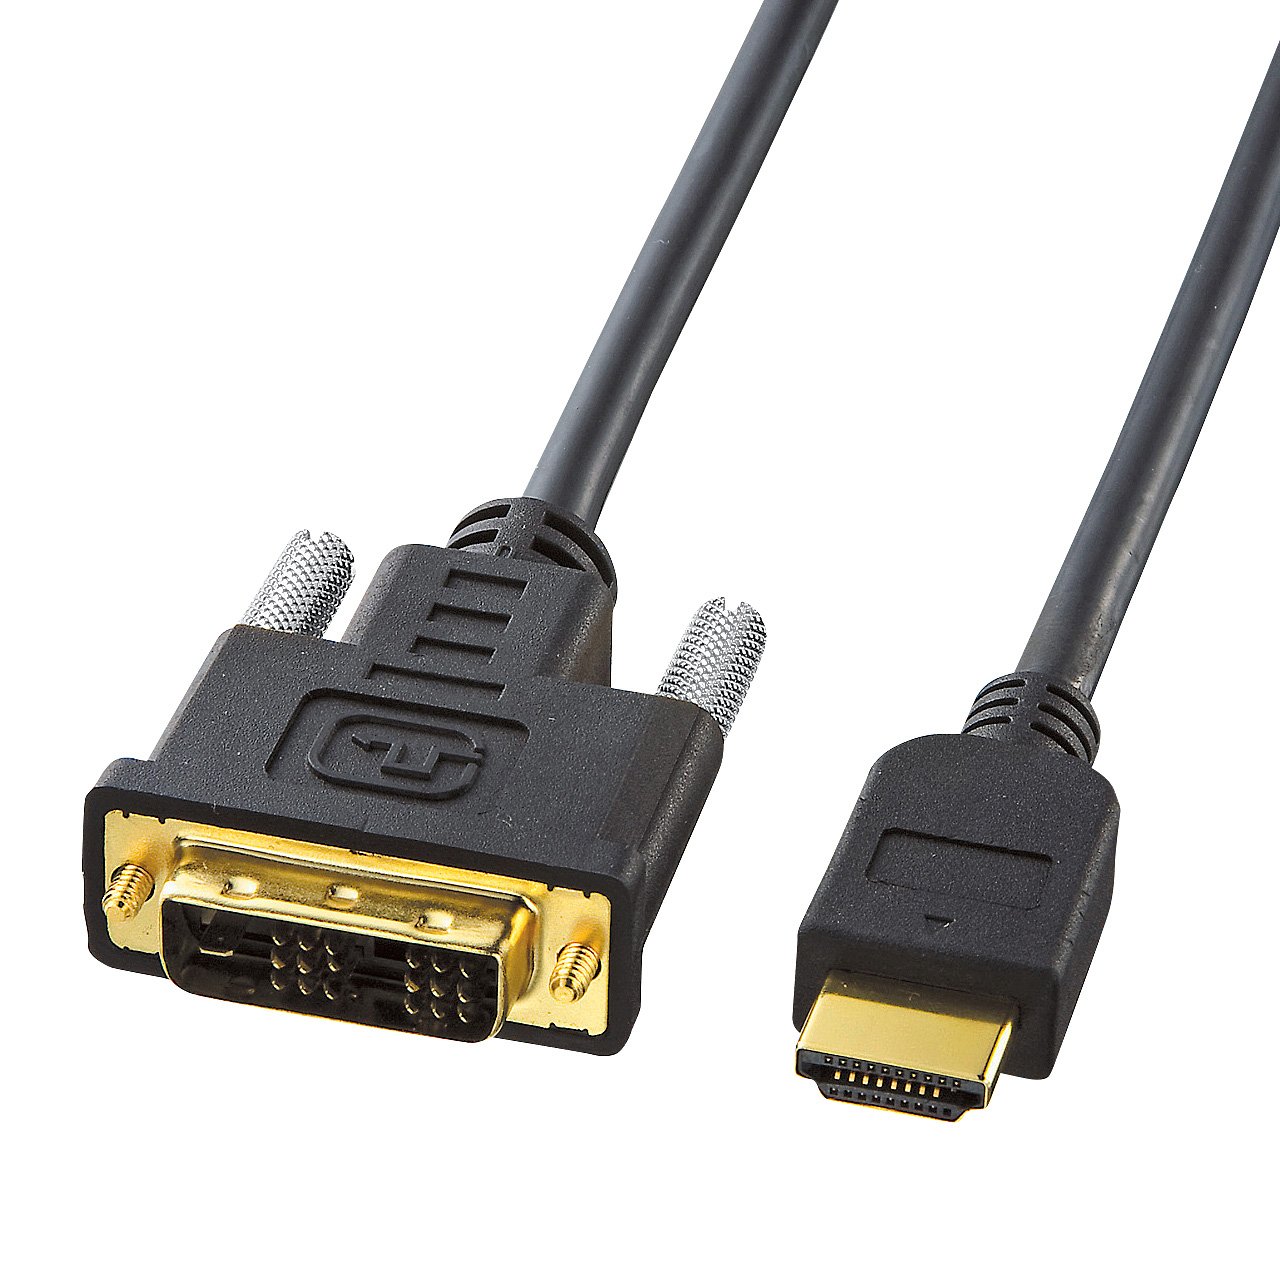 サンワサプライ HDMI-DVIケーブル 3m KM-HD21-30